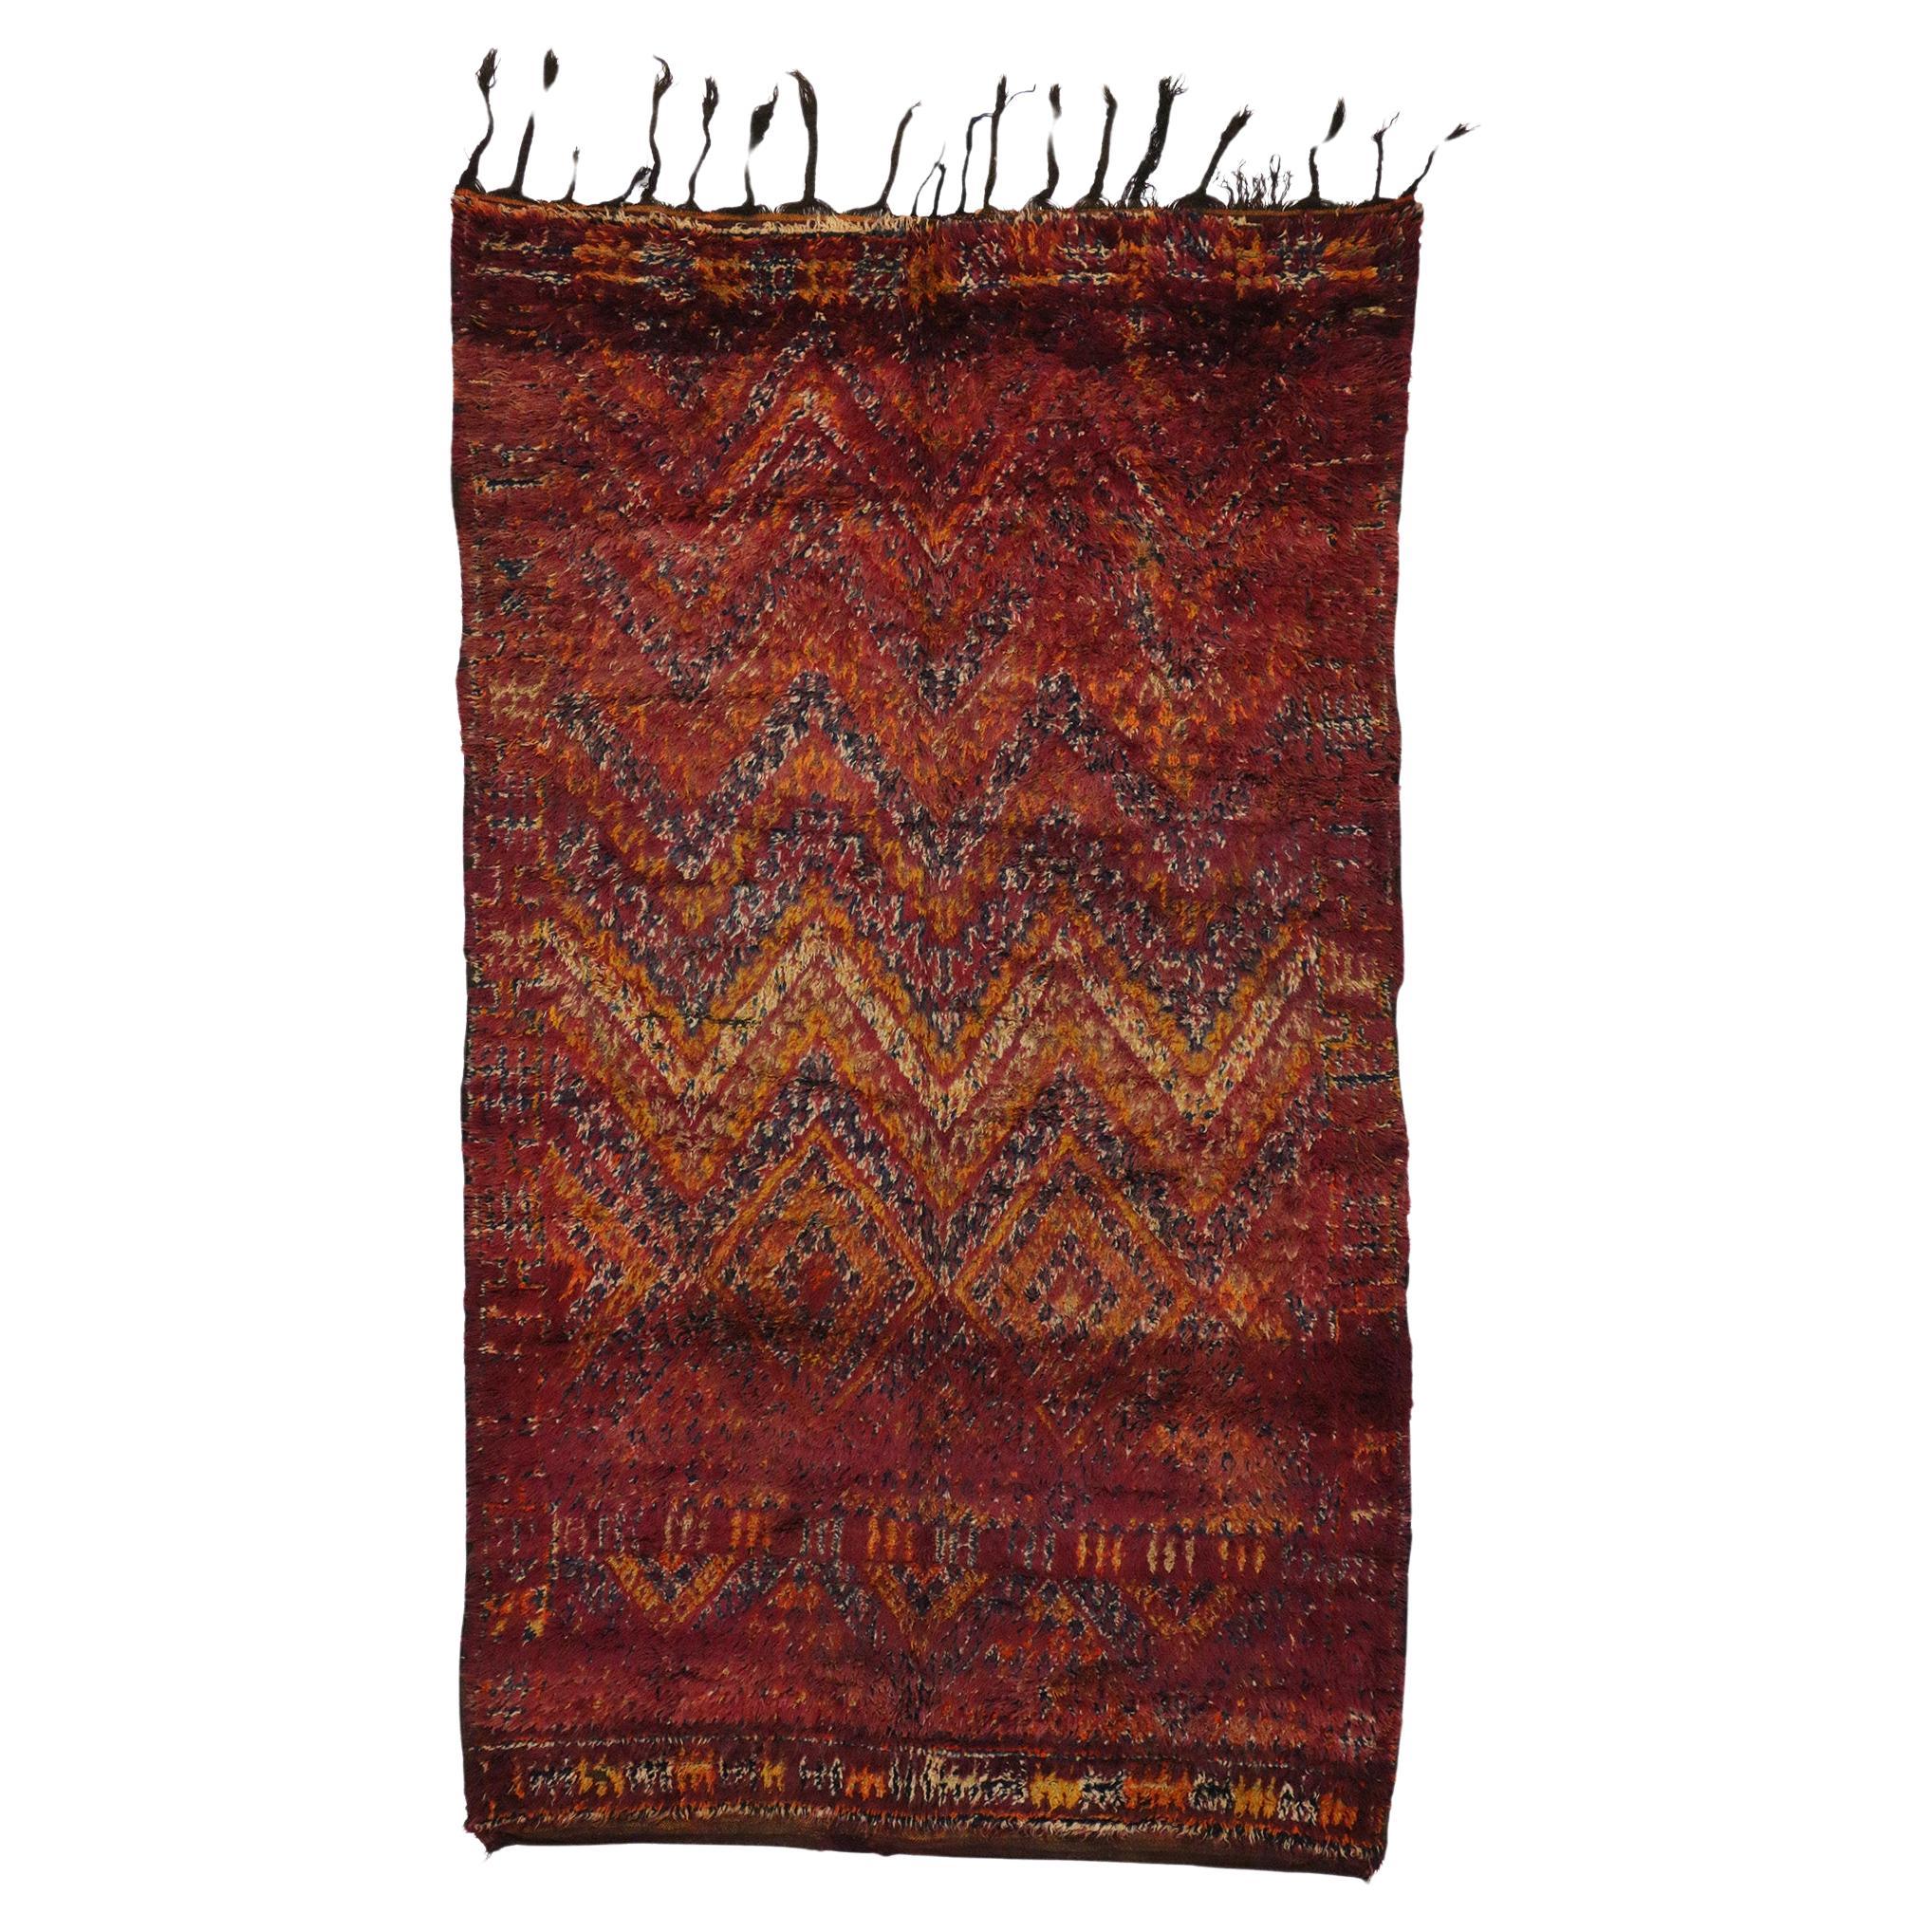 Marokkanischer Beni MGuild Vintage-Teppich im Maximalismus-Stil, Bohemian Meets Maximalismus